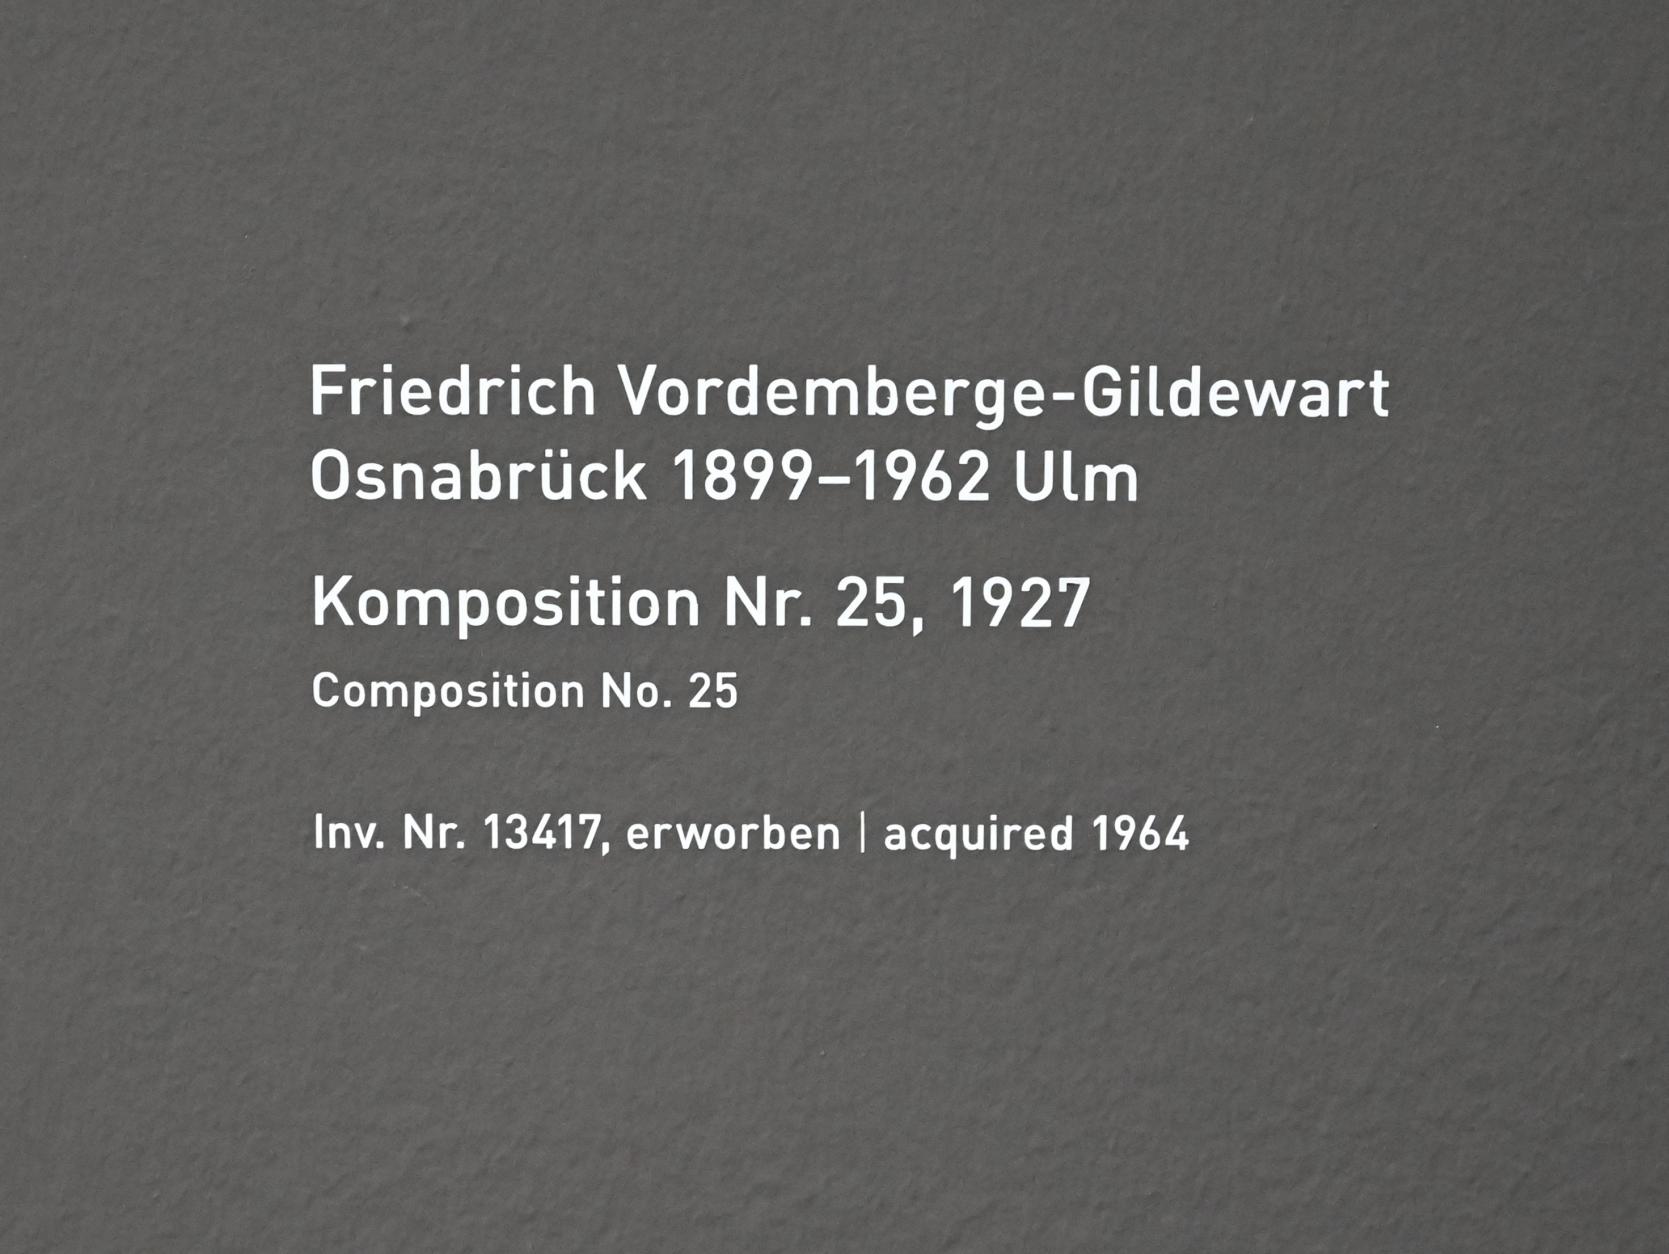 Friedrich Vordemberge-Gildewart (1927–1962), Komposition Nr. 25, München, Pinakothek der Moderne, Saal 11, 1927, Bild 2/2